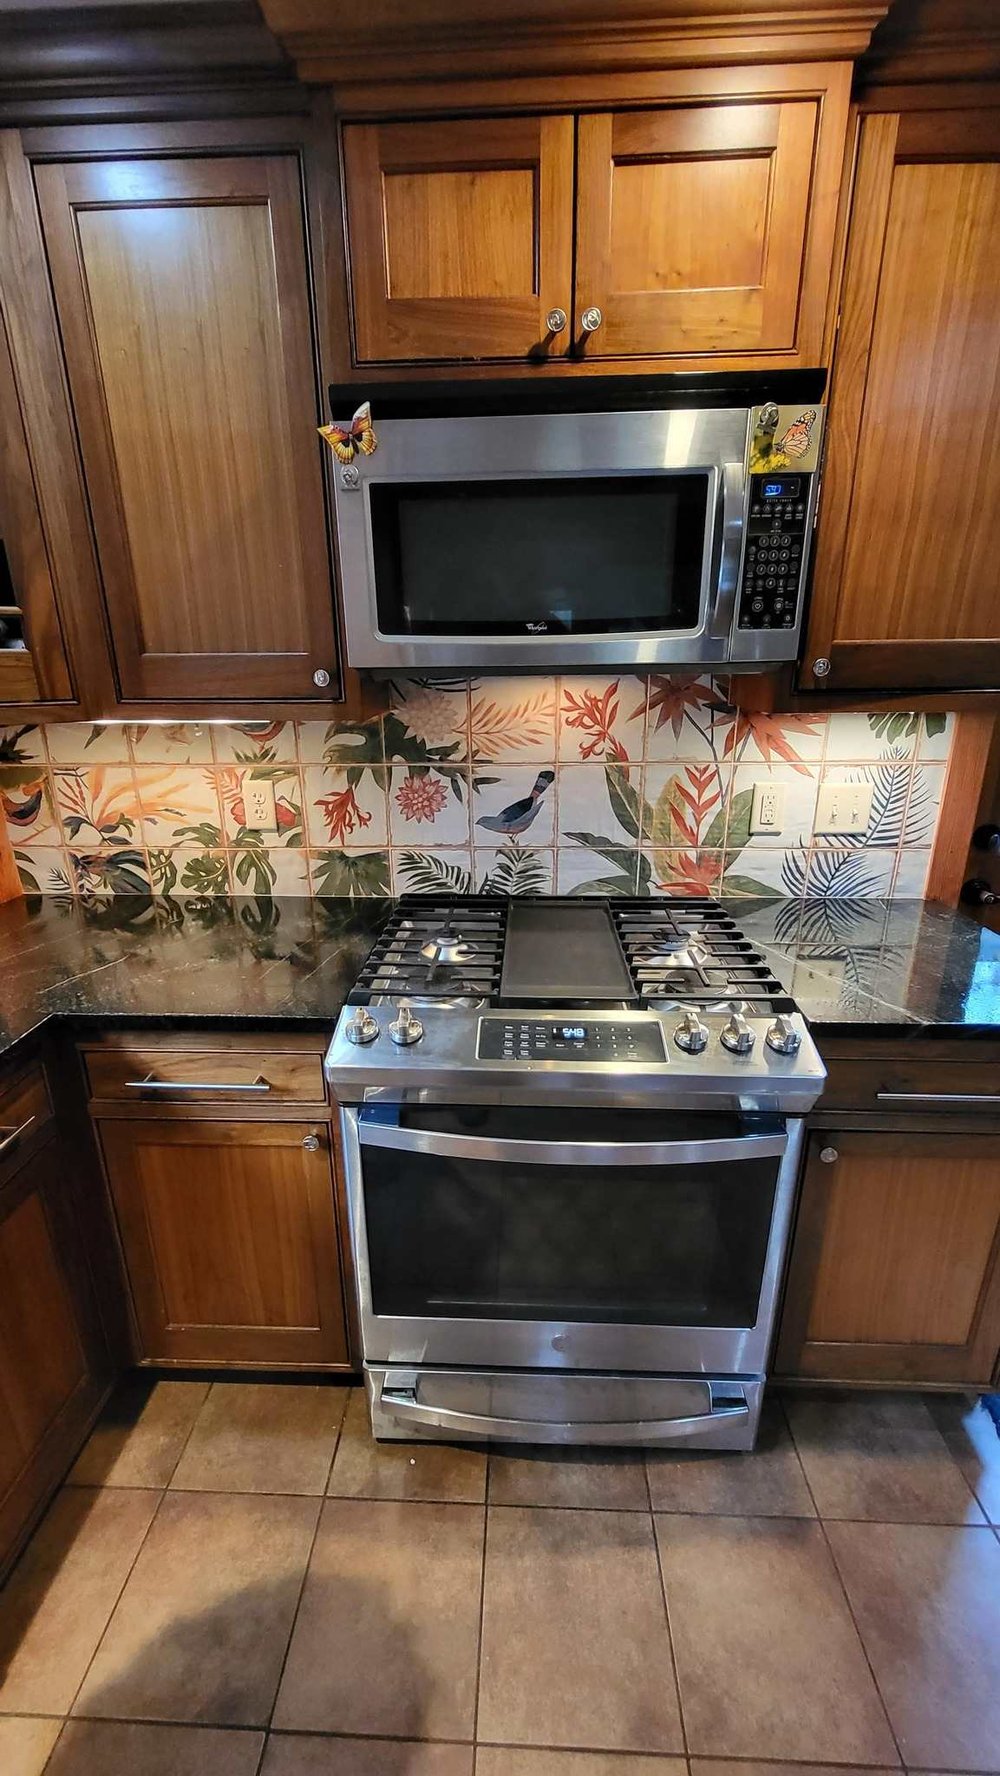 Floral kitchen tile backsplash with task lighing in New Hampshire kitchen remodel